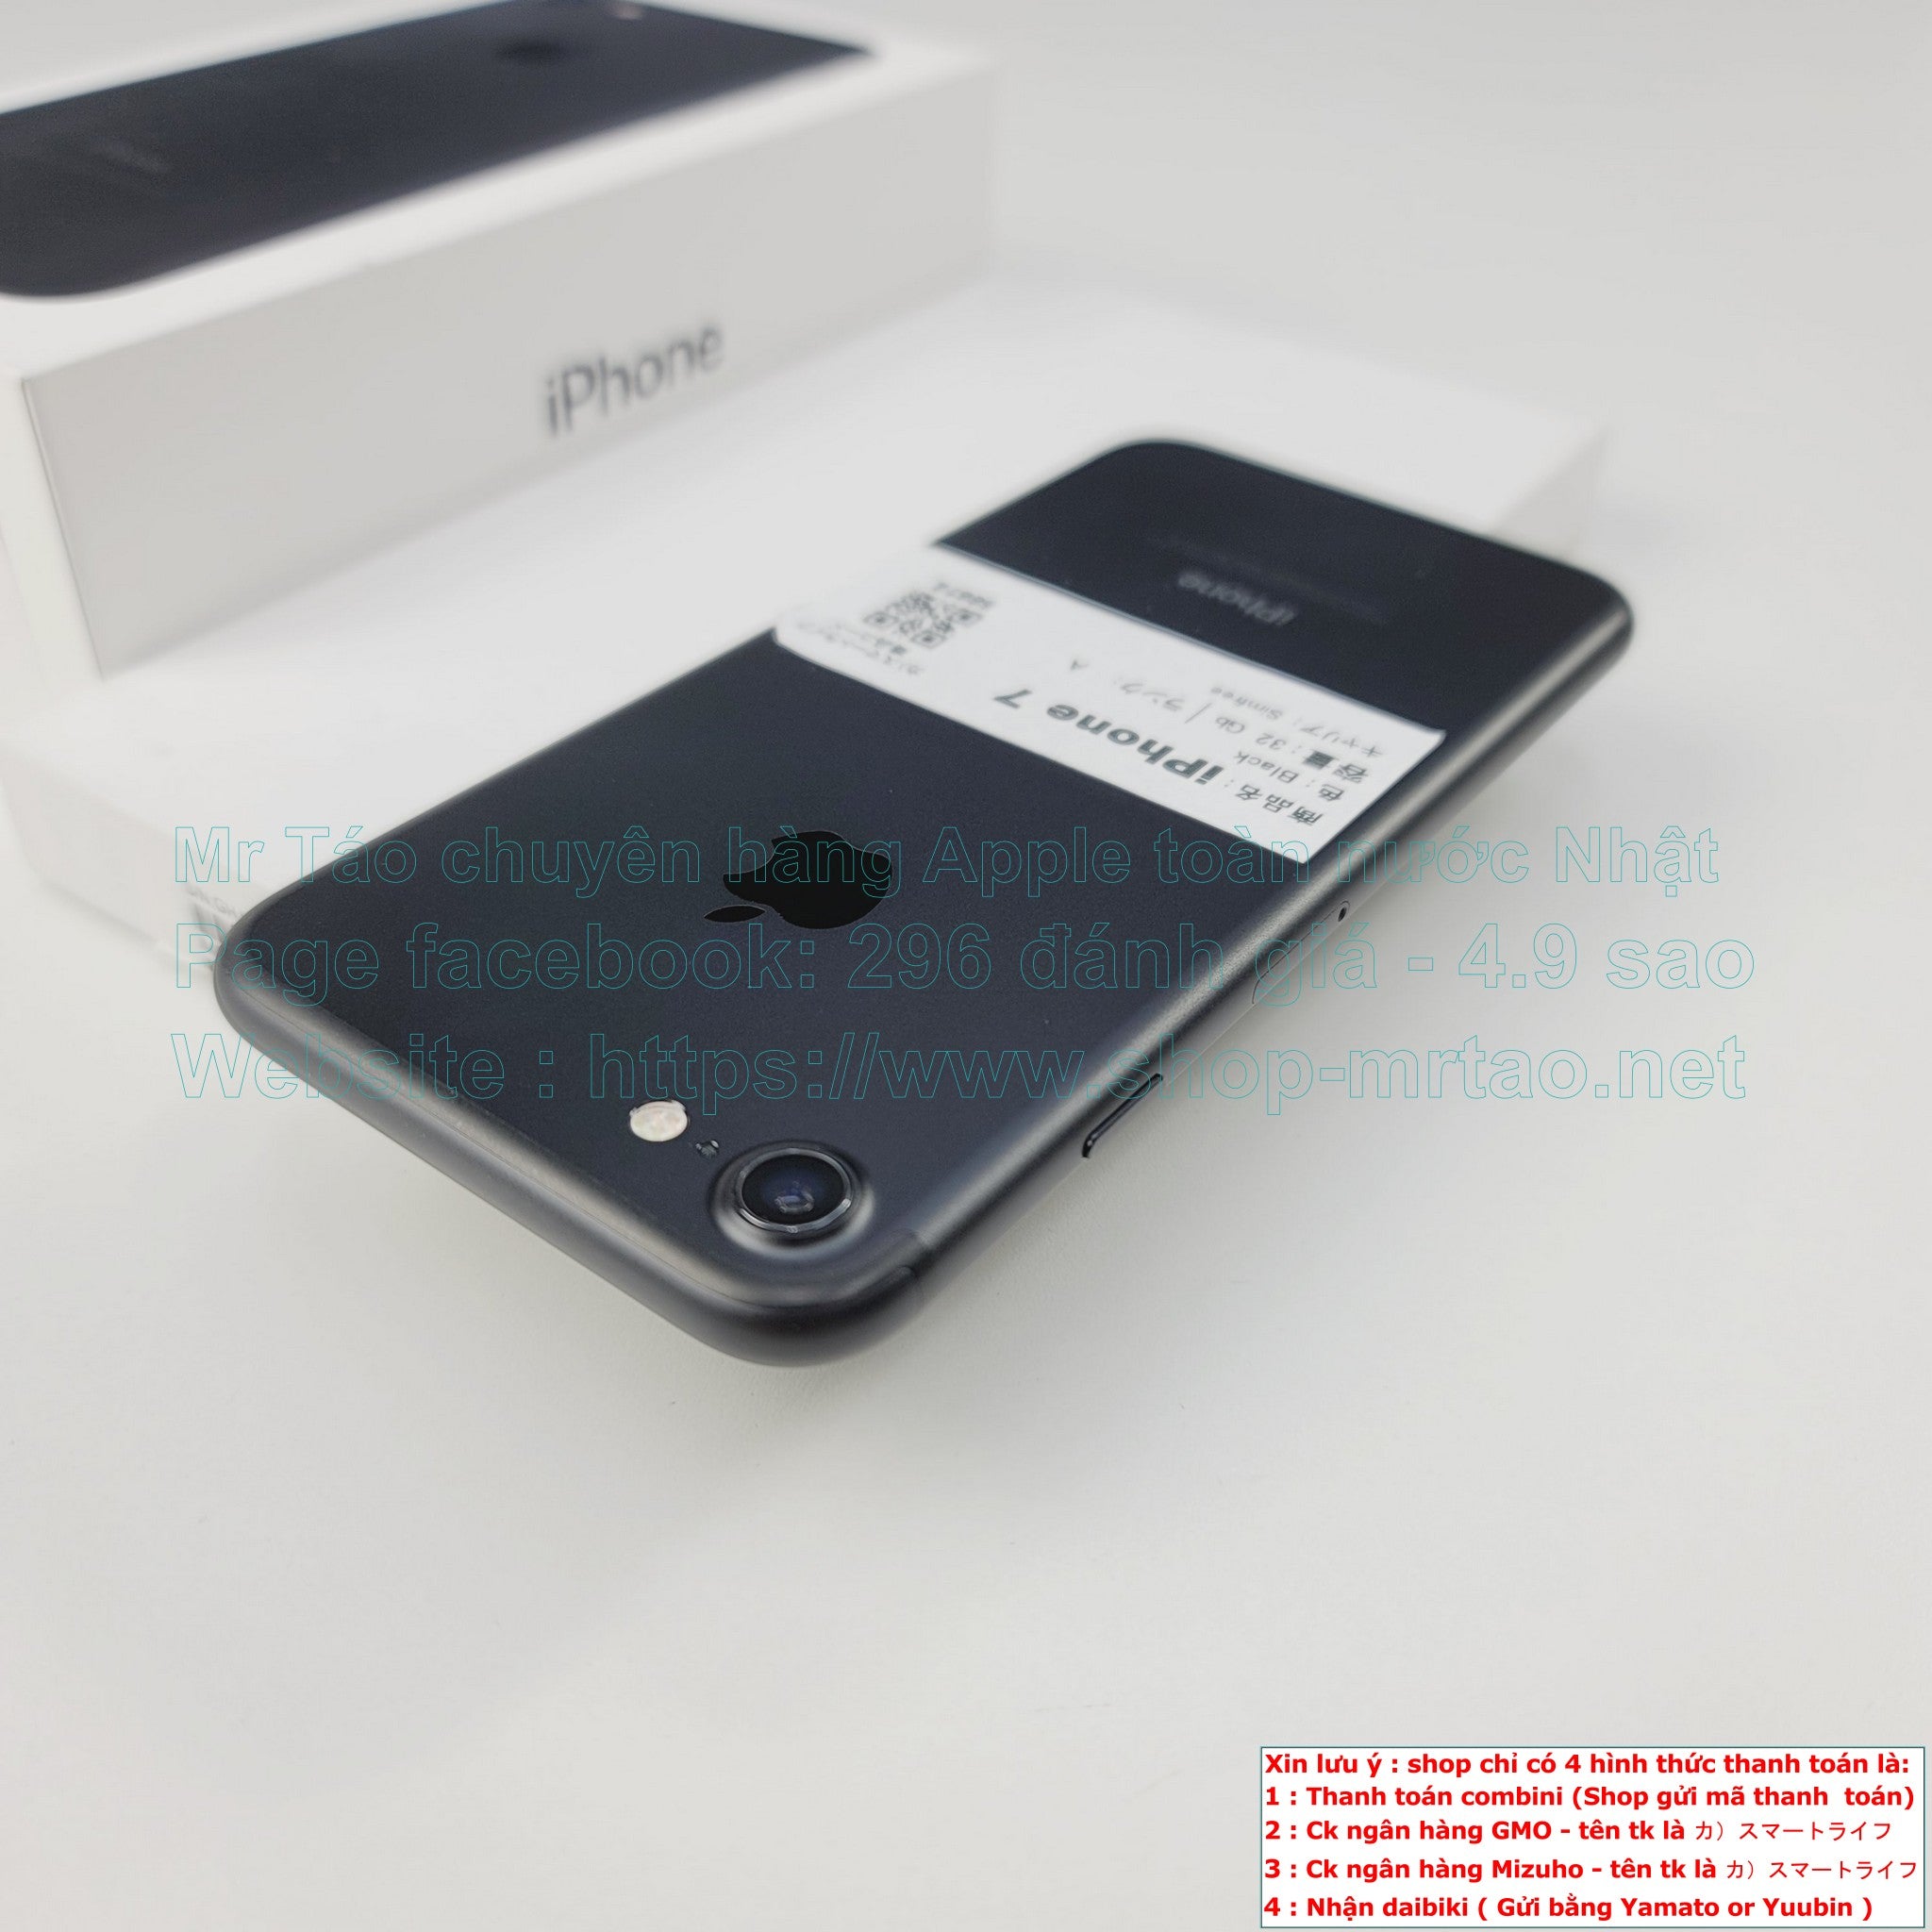 iPhone 7 được đánh giá là có màn hình điện thoại tốt nhất  Sản phẩm mới   Vietnam VietnamPlus